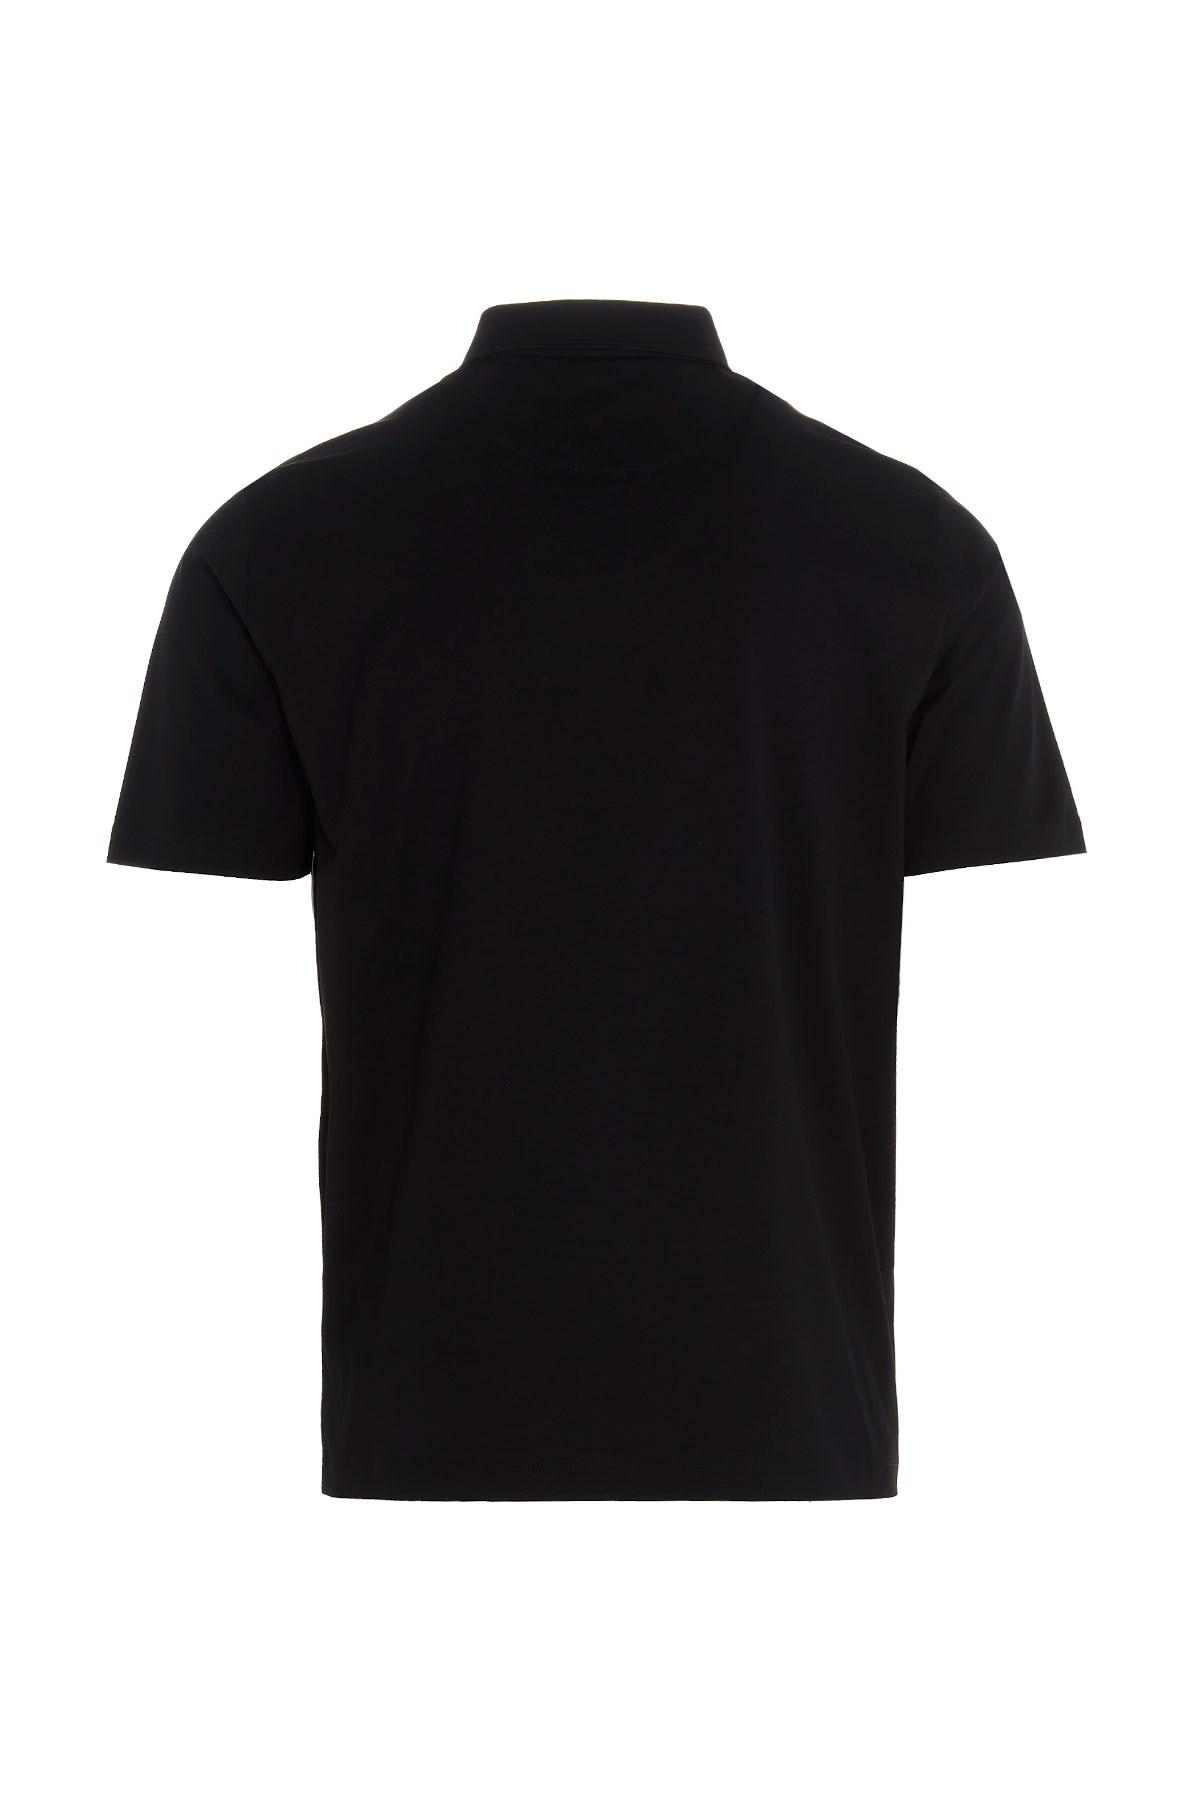 Prada Synthetic Nylon Pocket Polo in Black for Men - Lyst